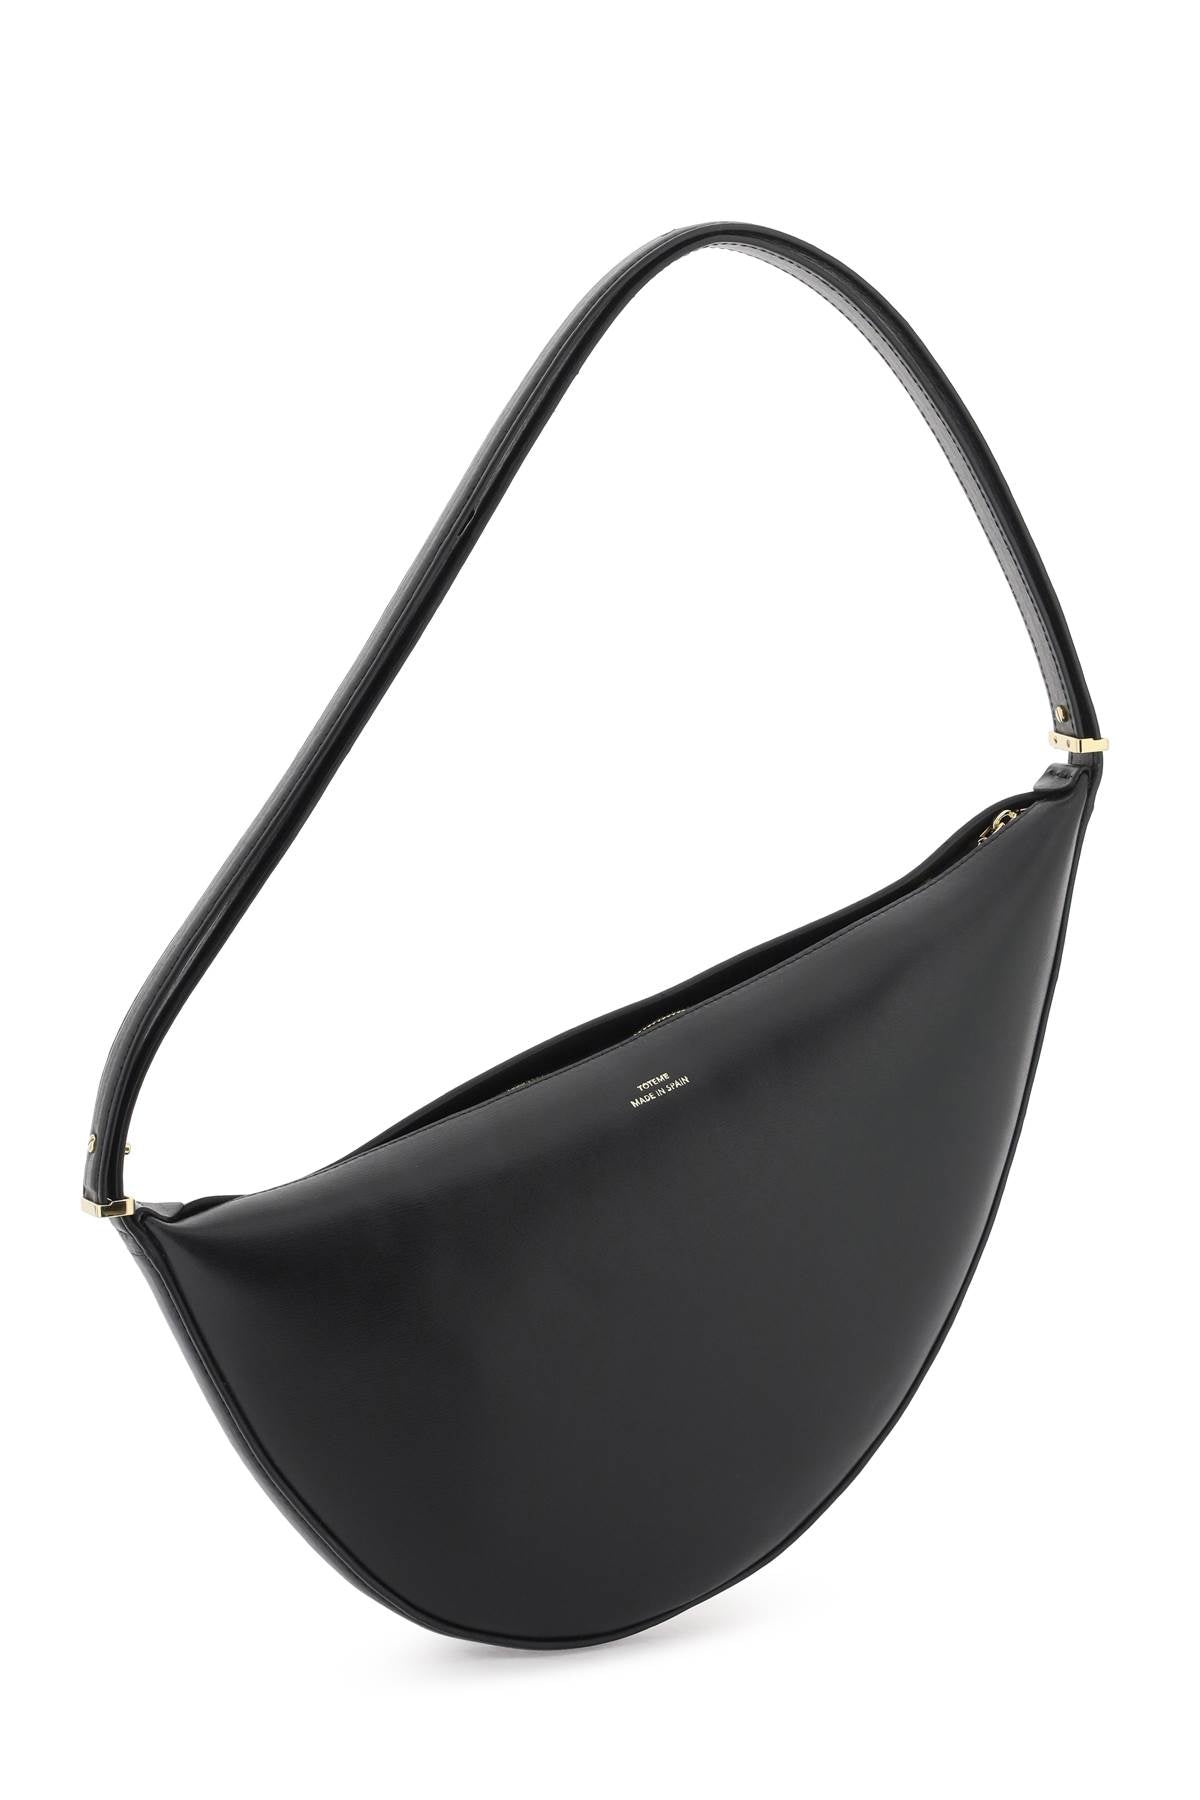 Toteme leather scooped shoulder bag Black-Bag-TOTEME-os-Urbanheer